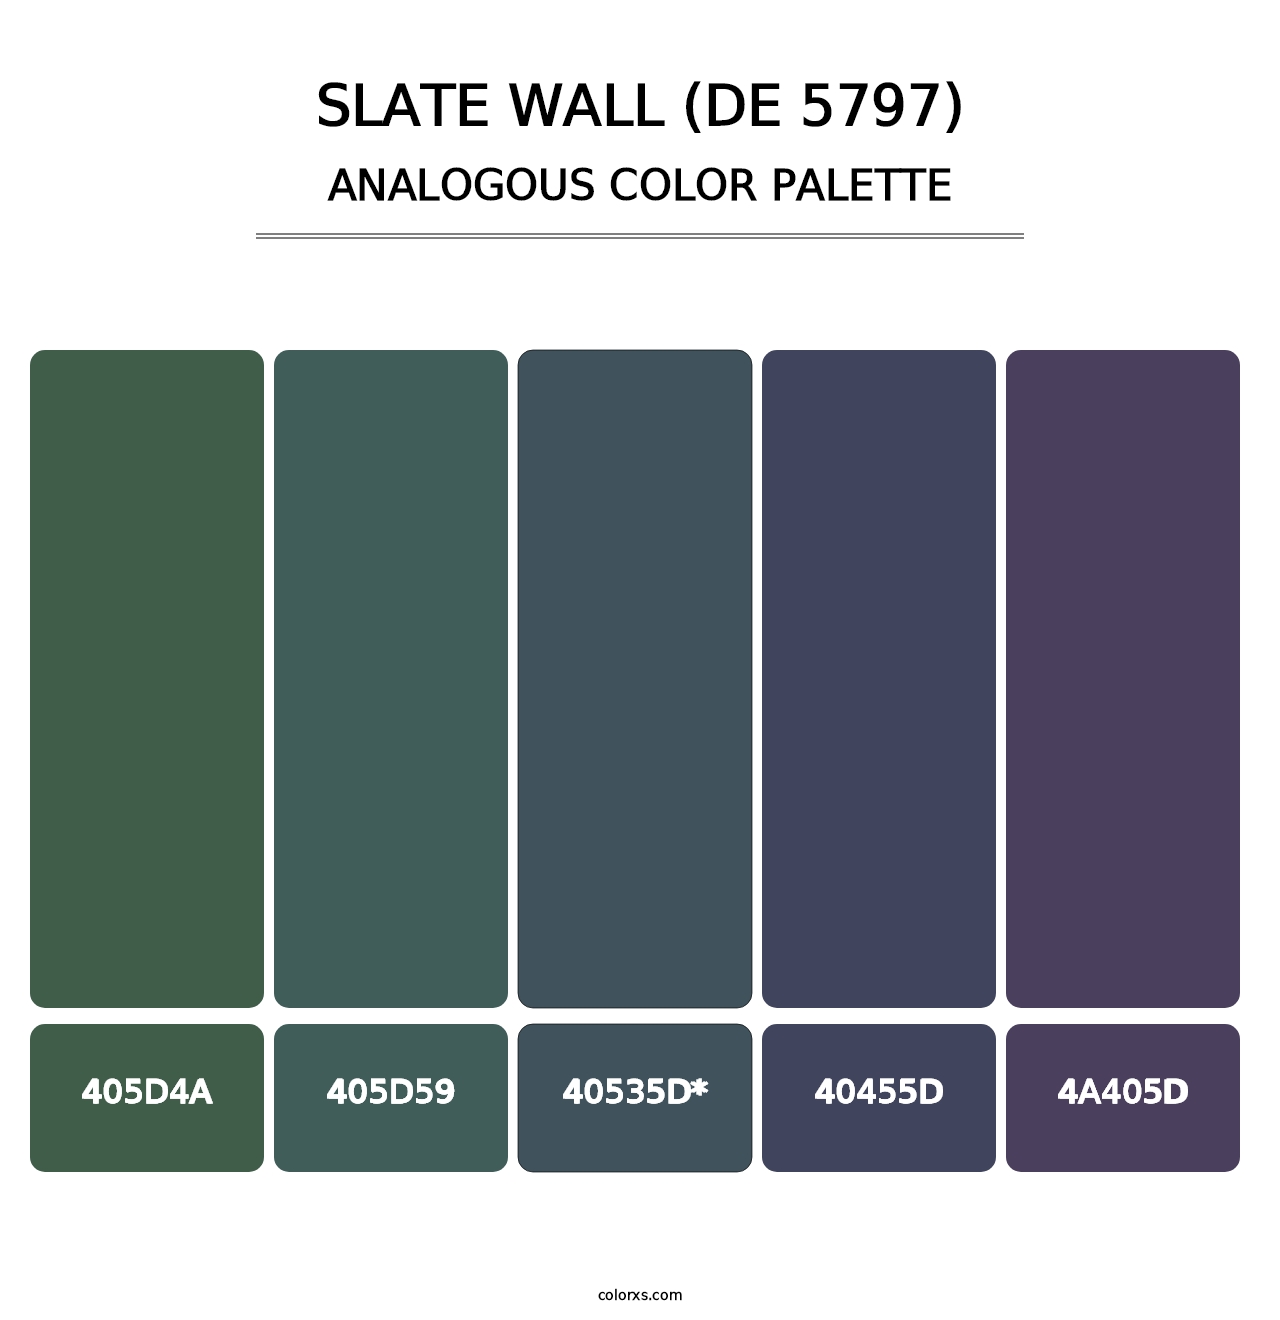 Slate Wall (DE 5797) - Analogous Color Palette